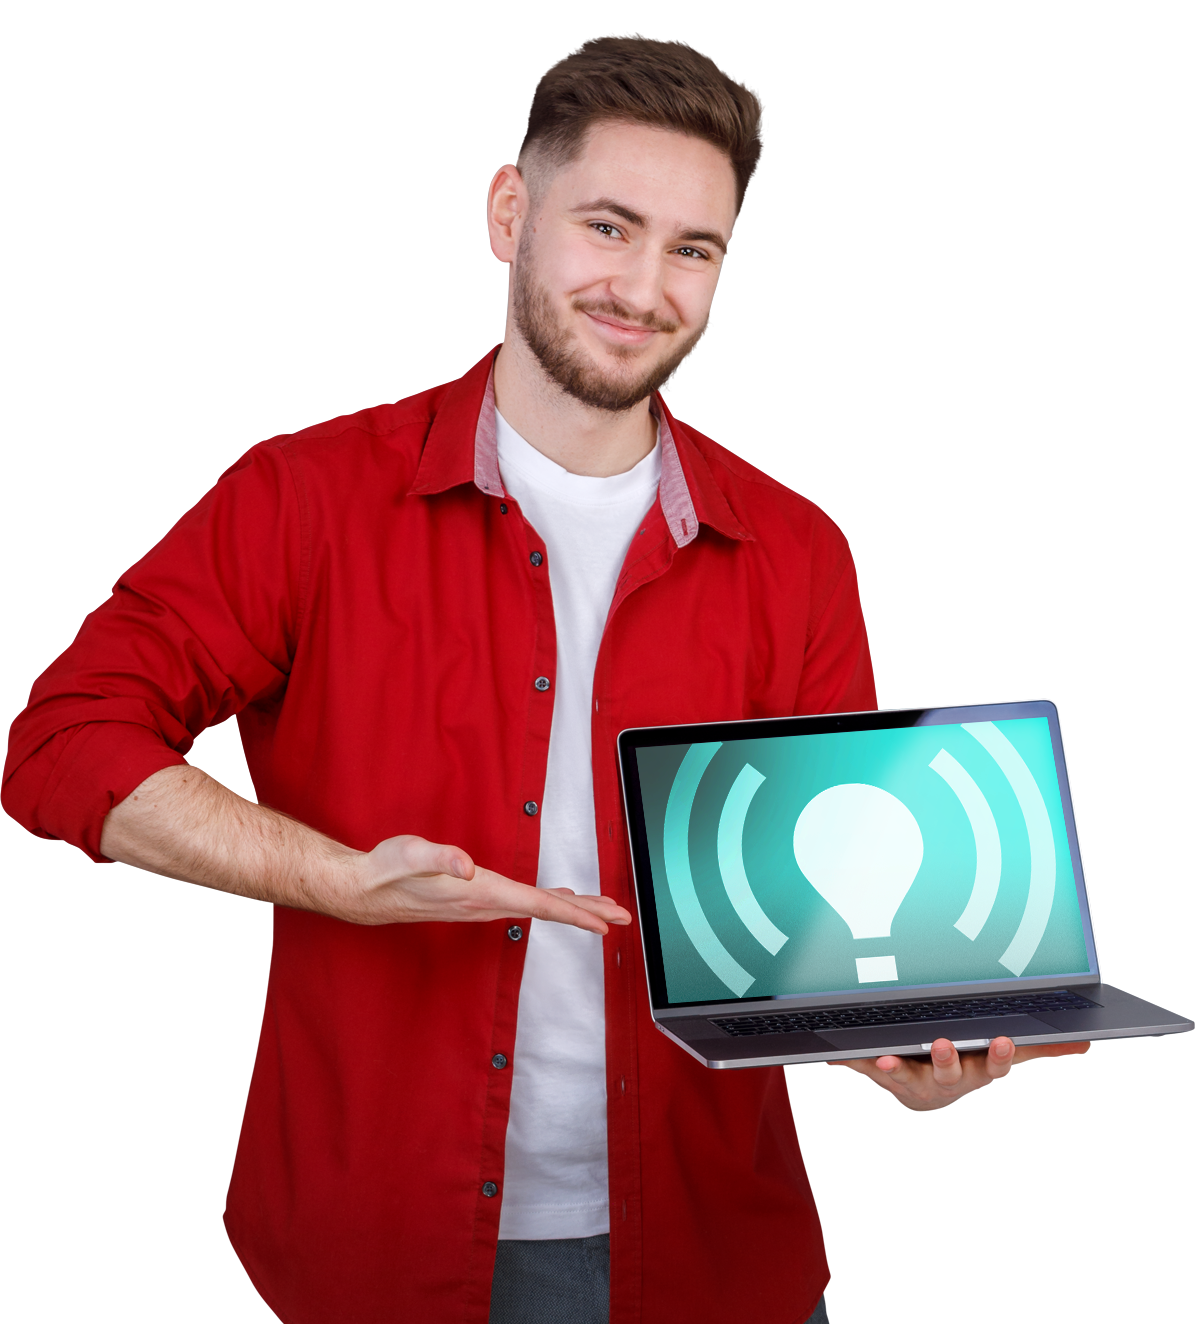 Mann zeigt Laptop mit Bulk-Icon